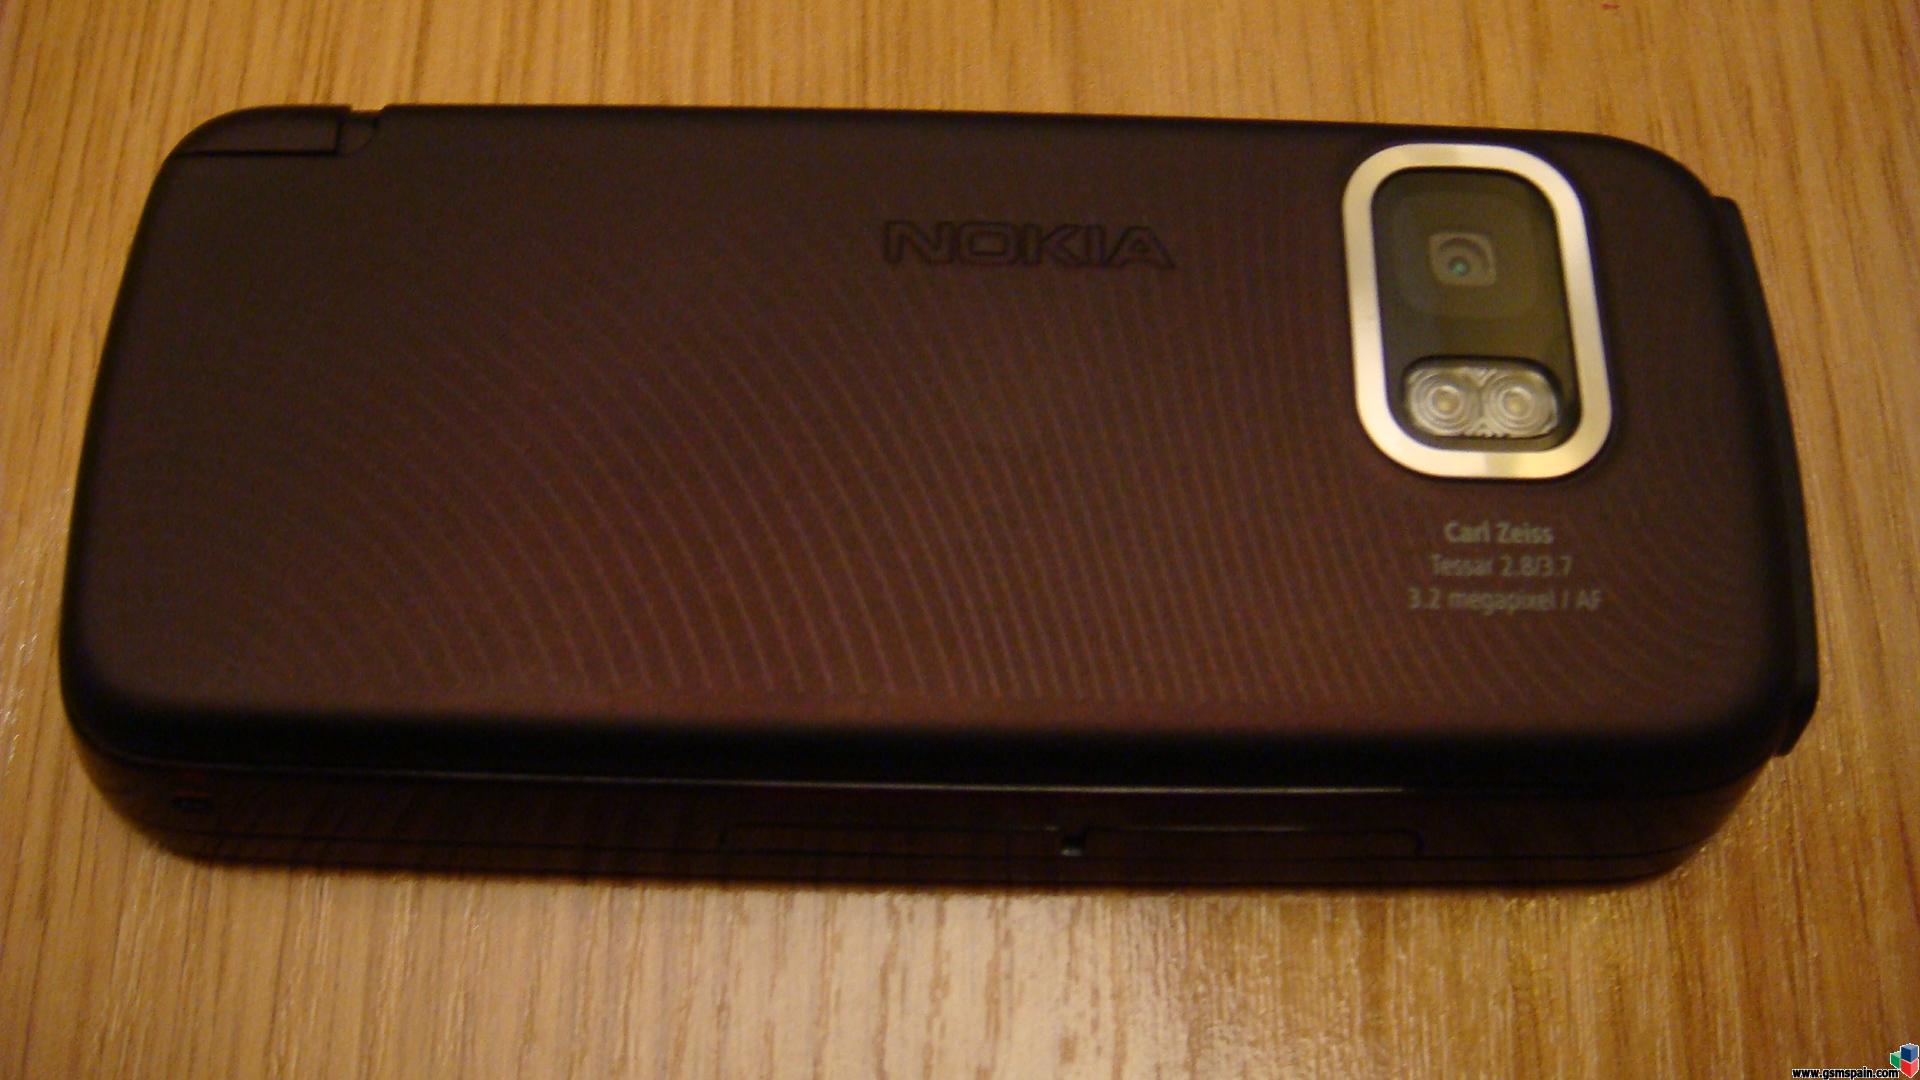 Nokia 5800  xpressmusic Libre